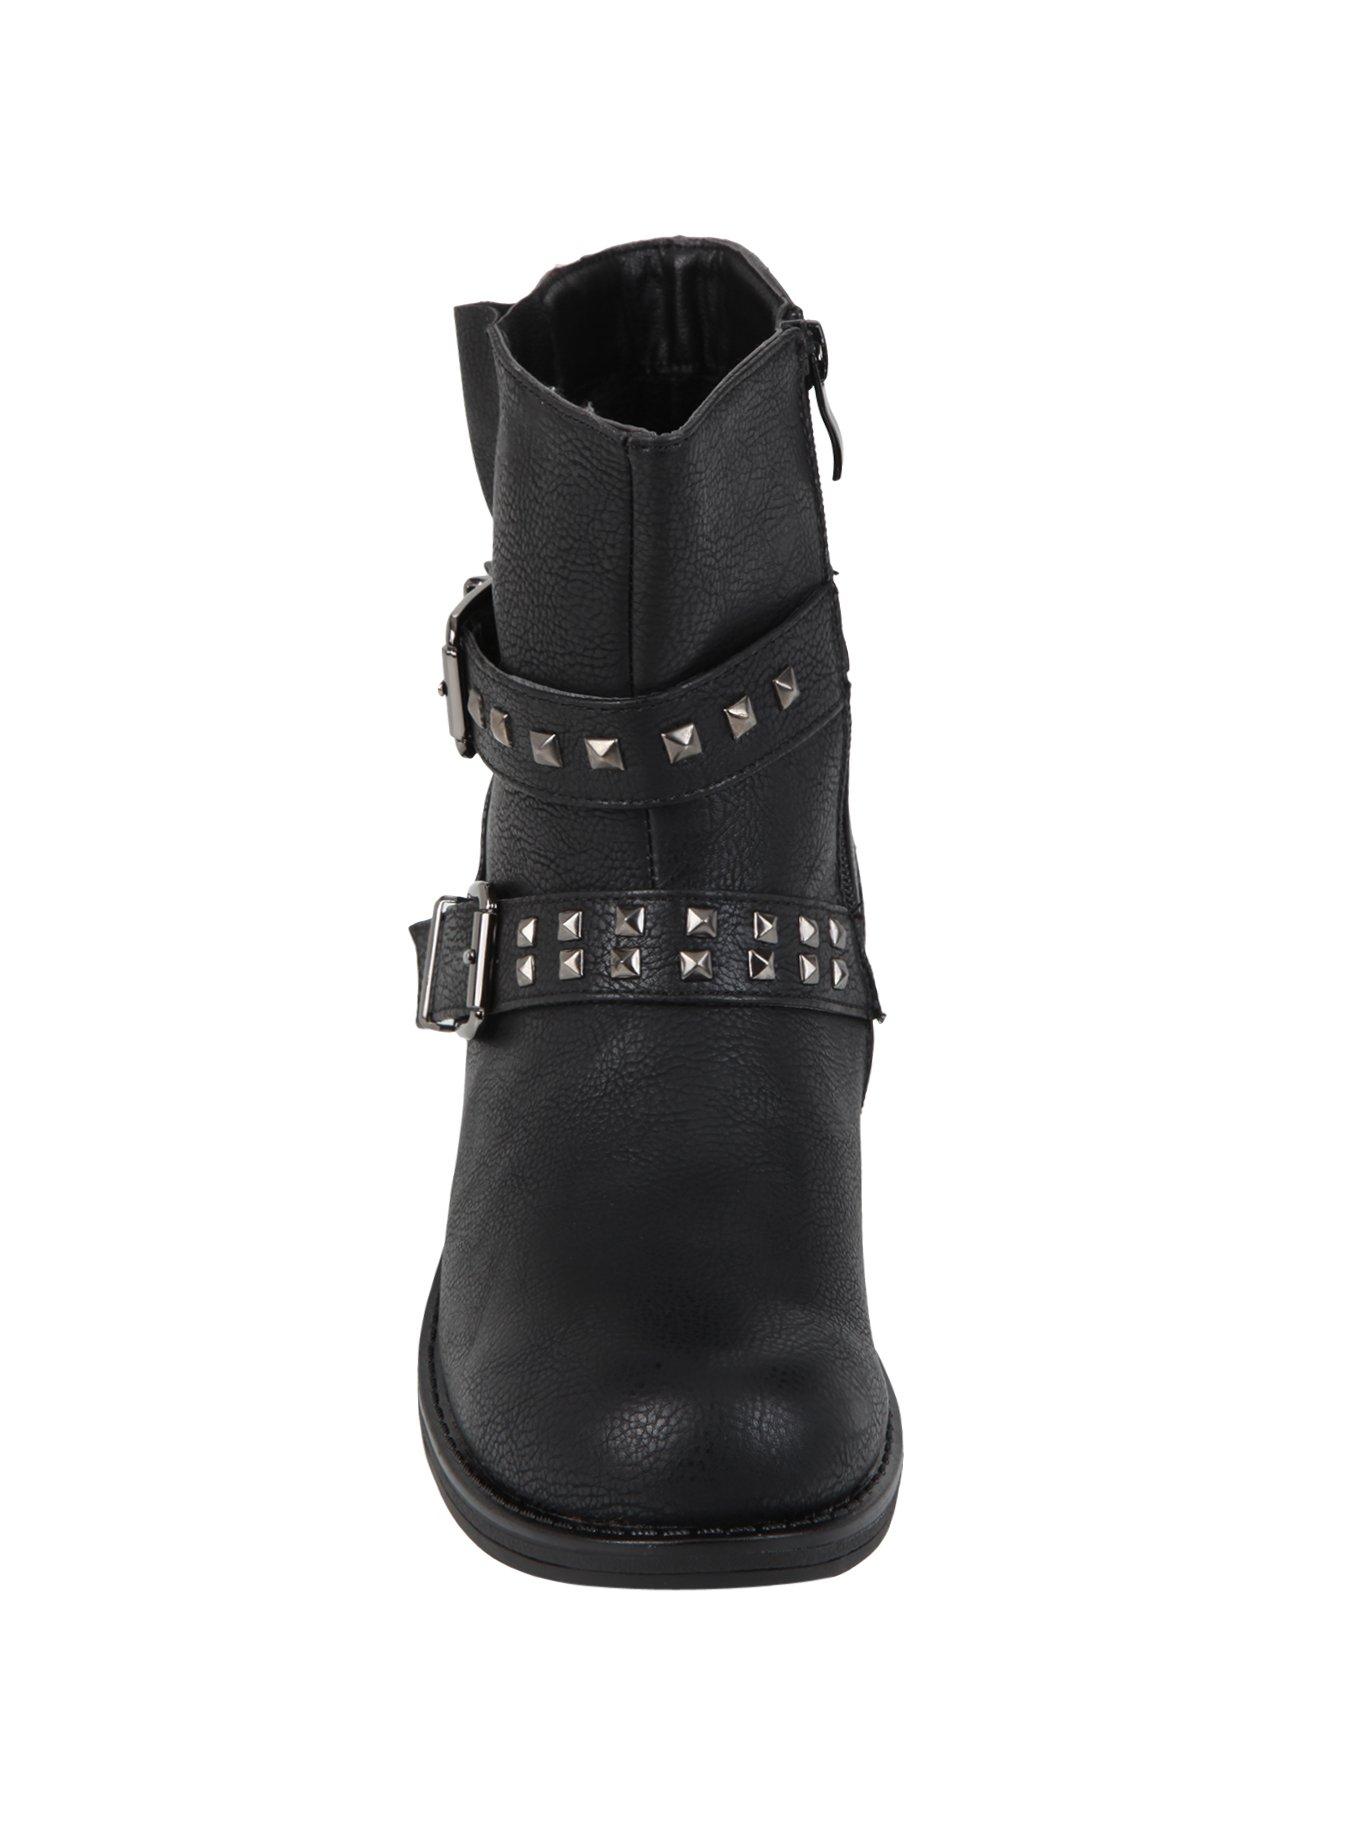 Black Buckle Stud Ankle Boots, , alternate